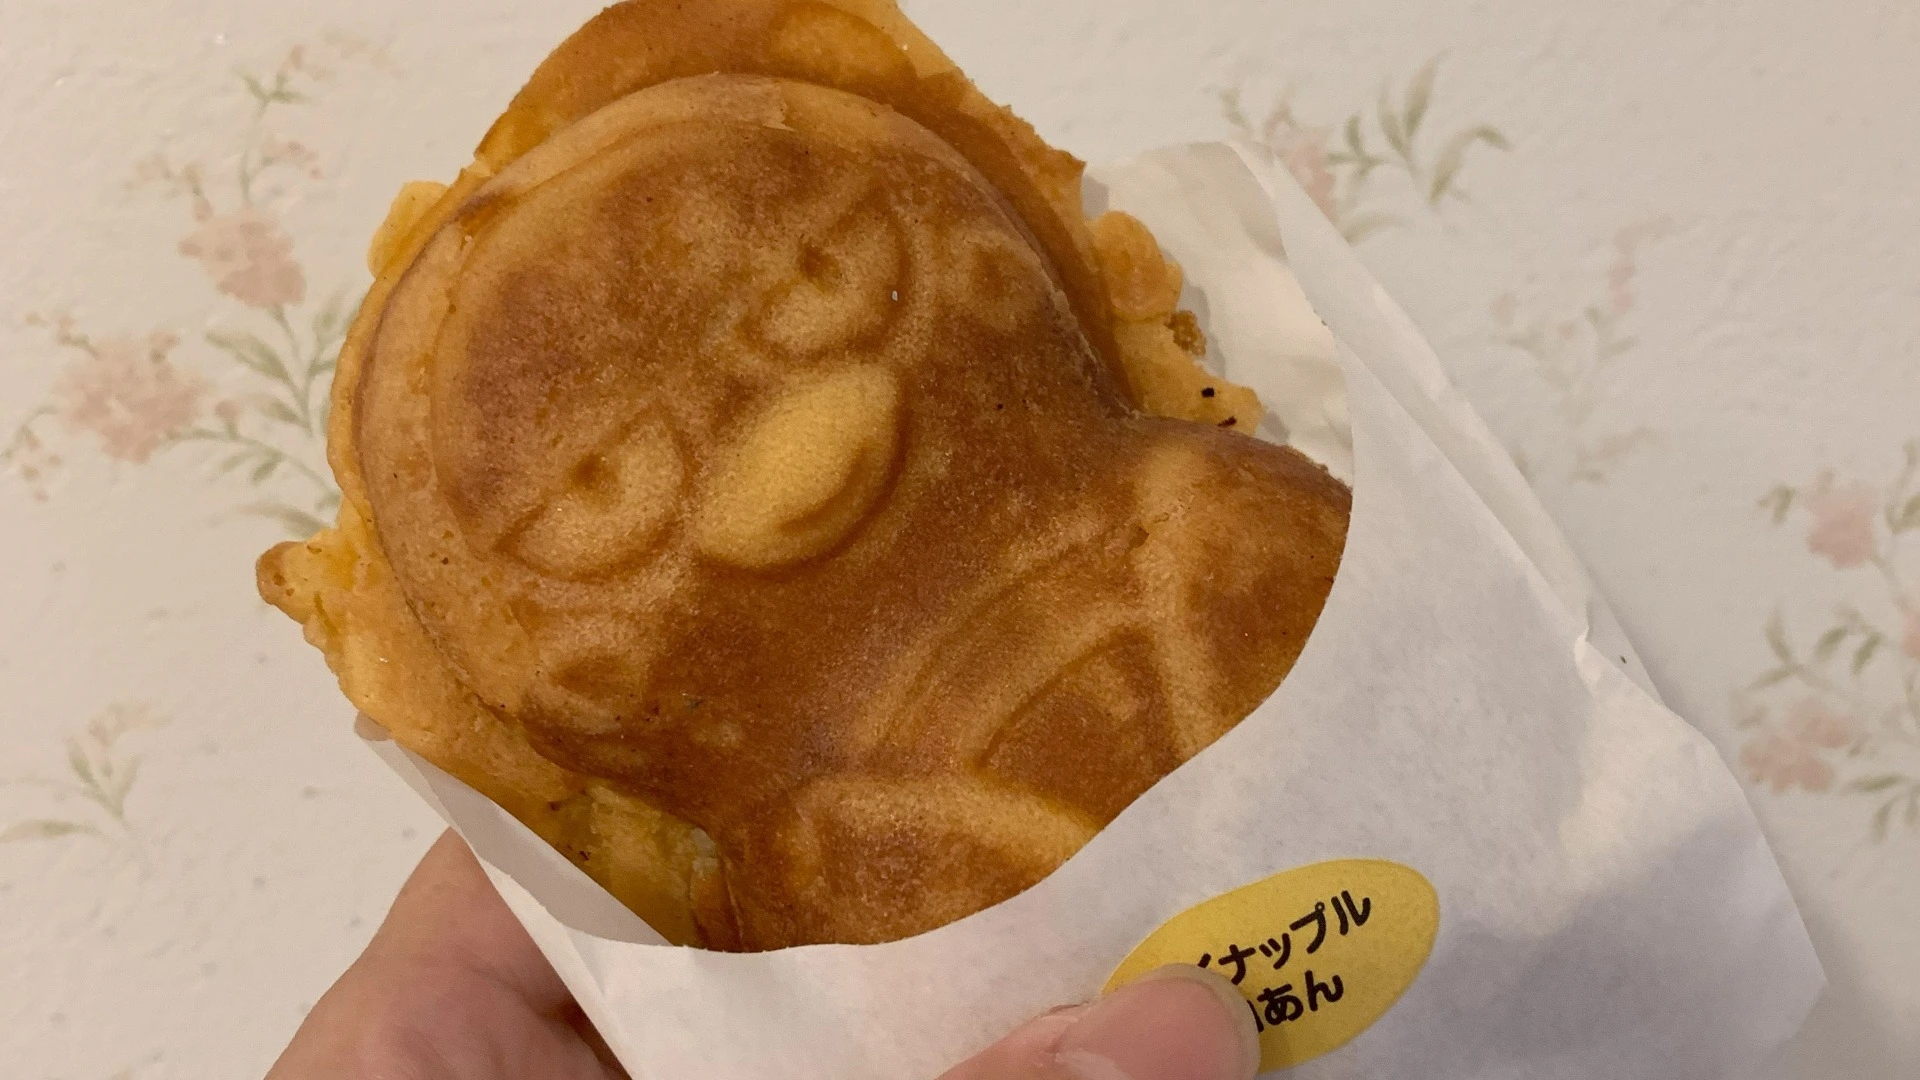 【富士宮市】やのくに純真米粉で作った『もんちゃんまんじゅう